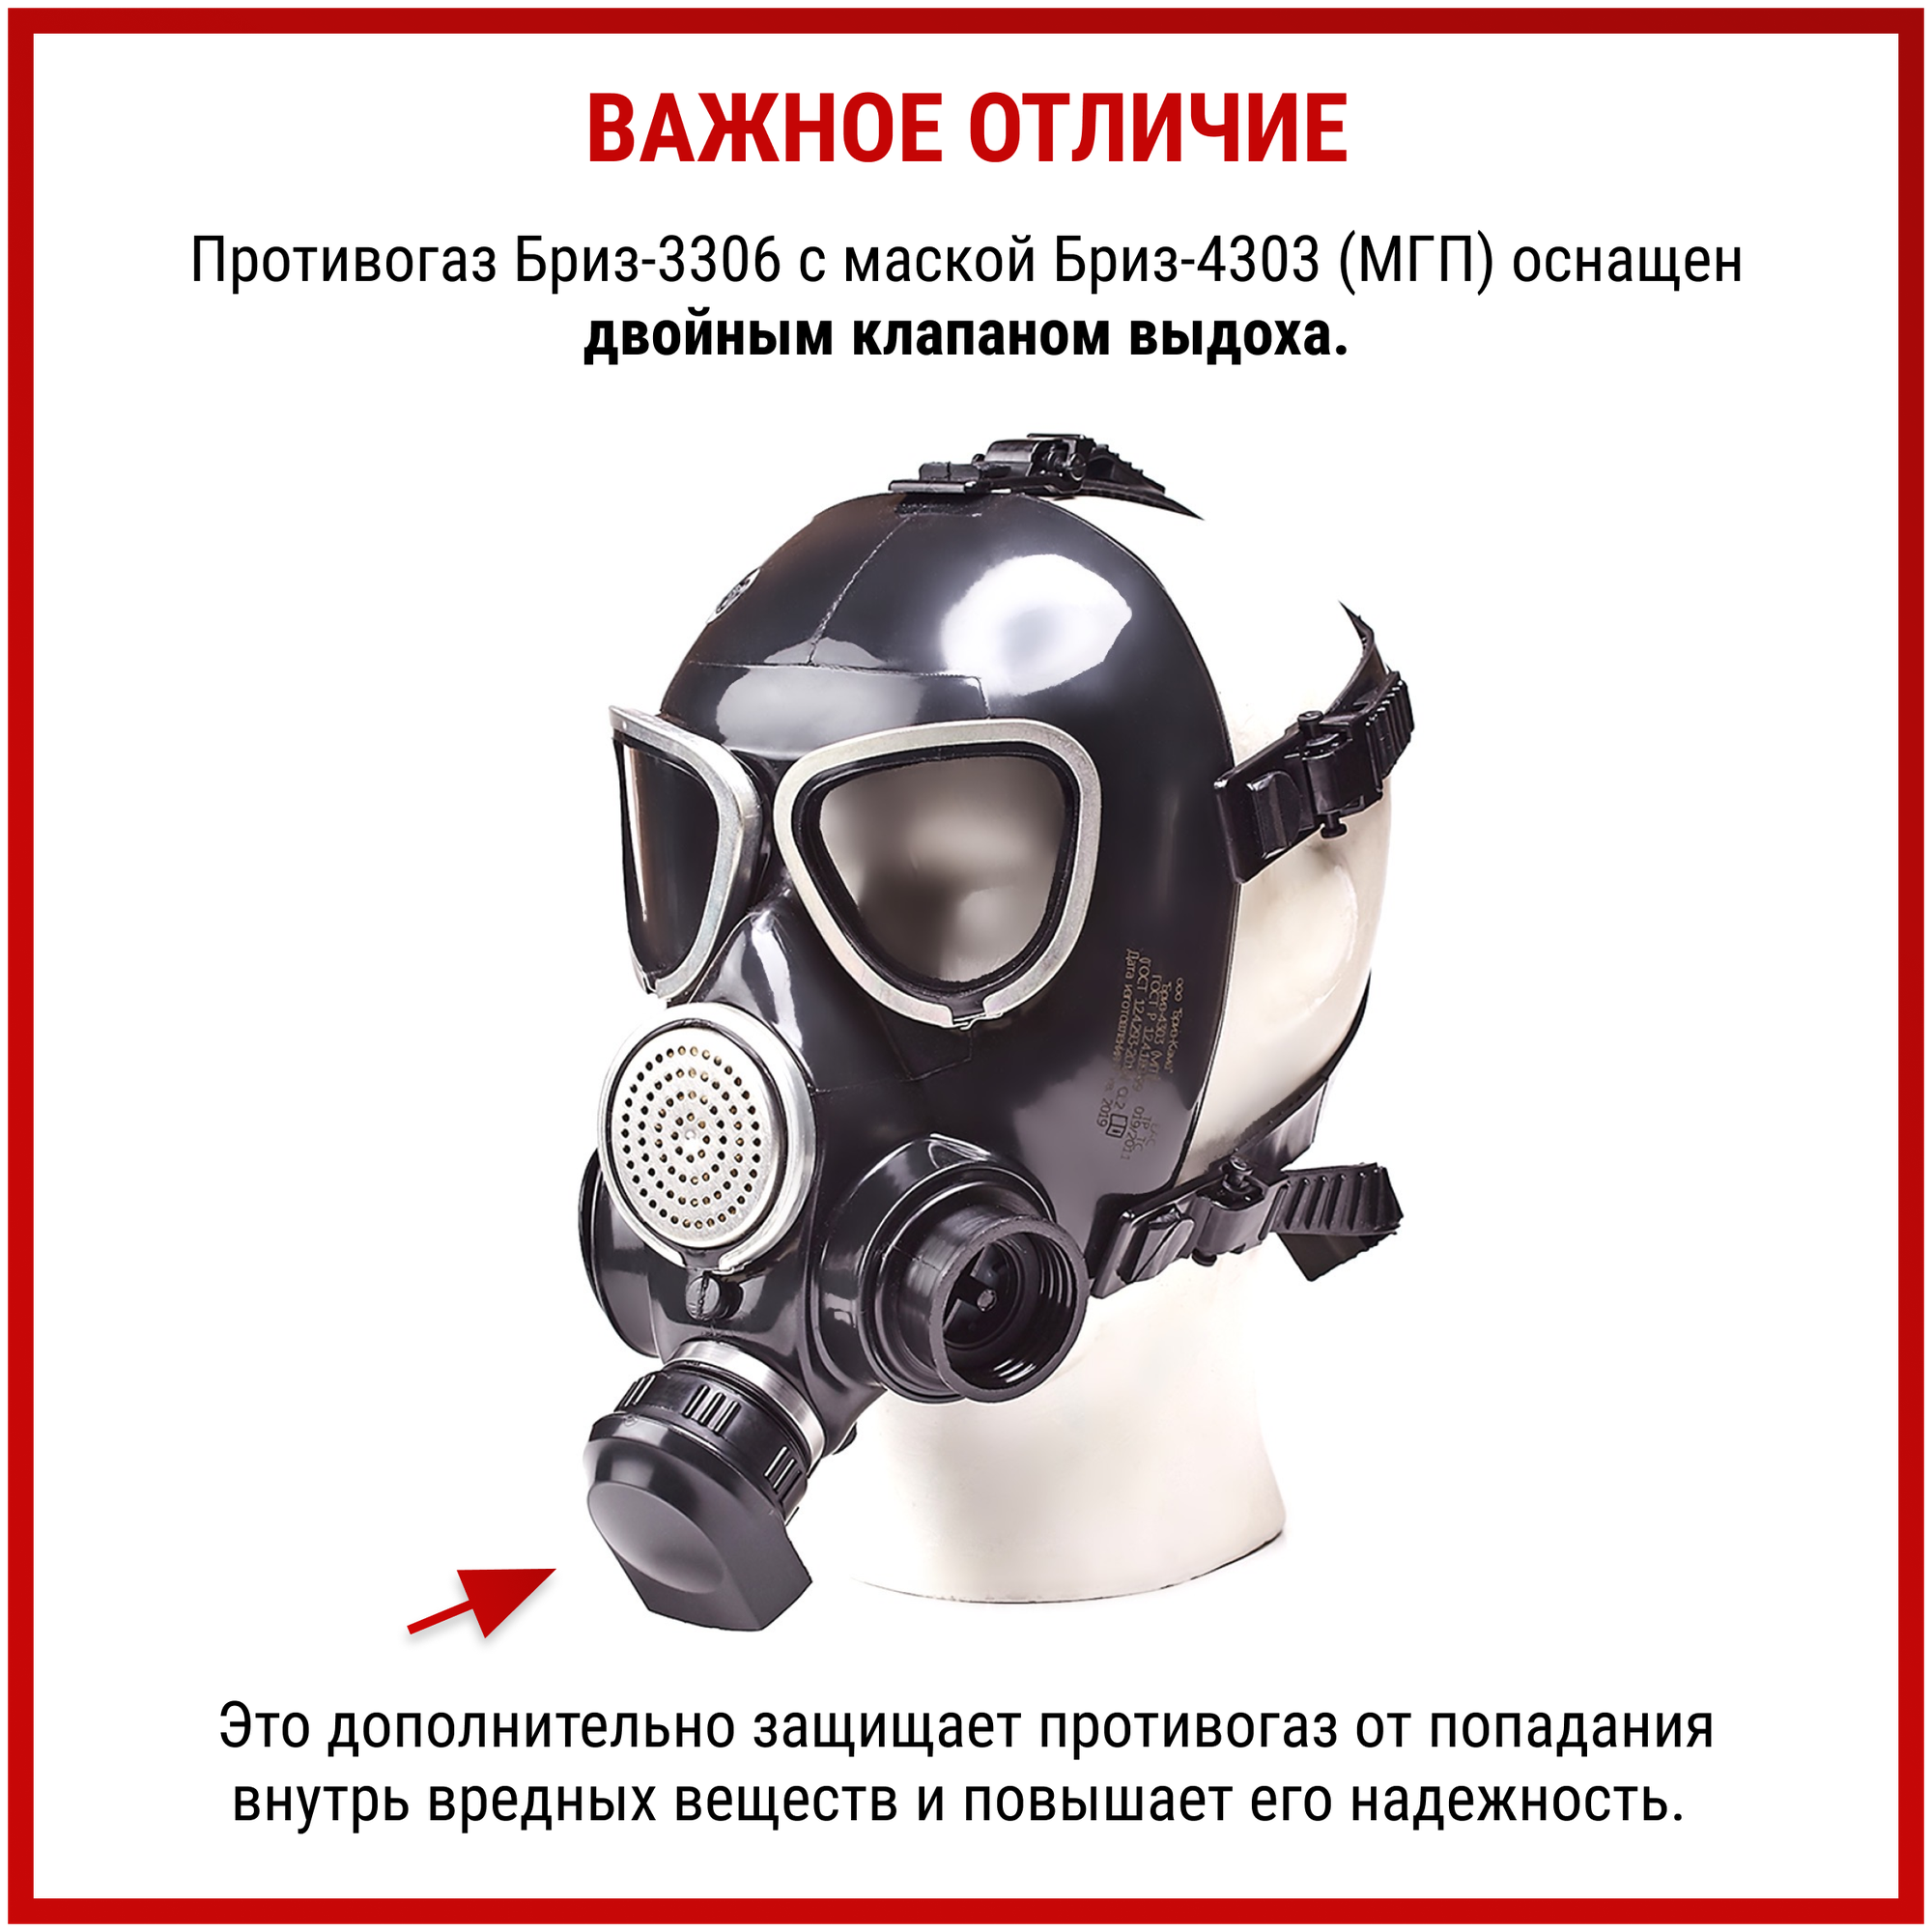 Противогаз Бриз-3306 (МГП) аналог ГП 7 Б маска защитная многоразовая с фильтром респиратор от пыли краски хлора радиоактивных веществ ffp3, размер L - фотография № 4